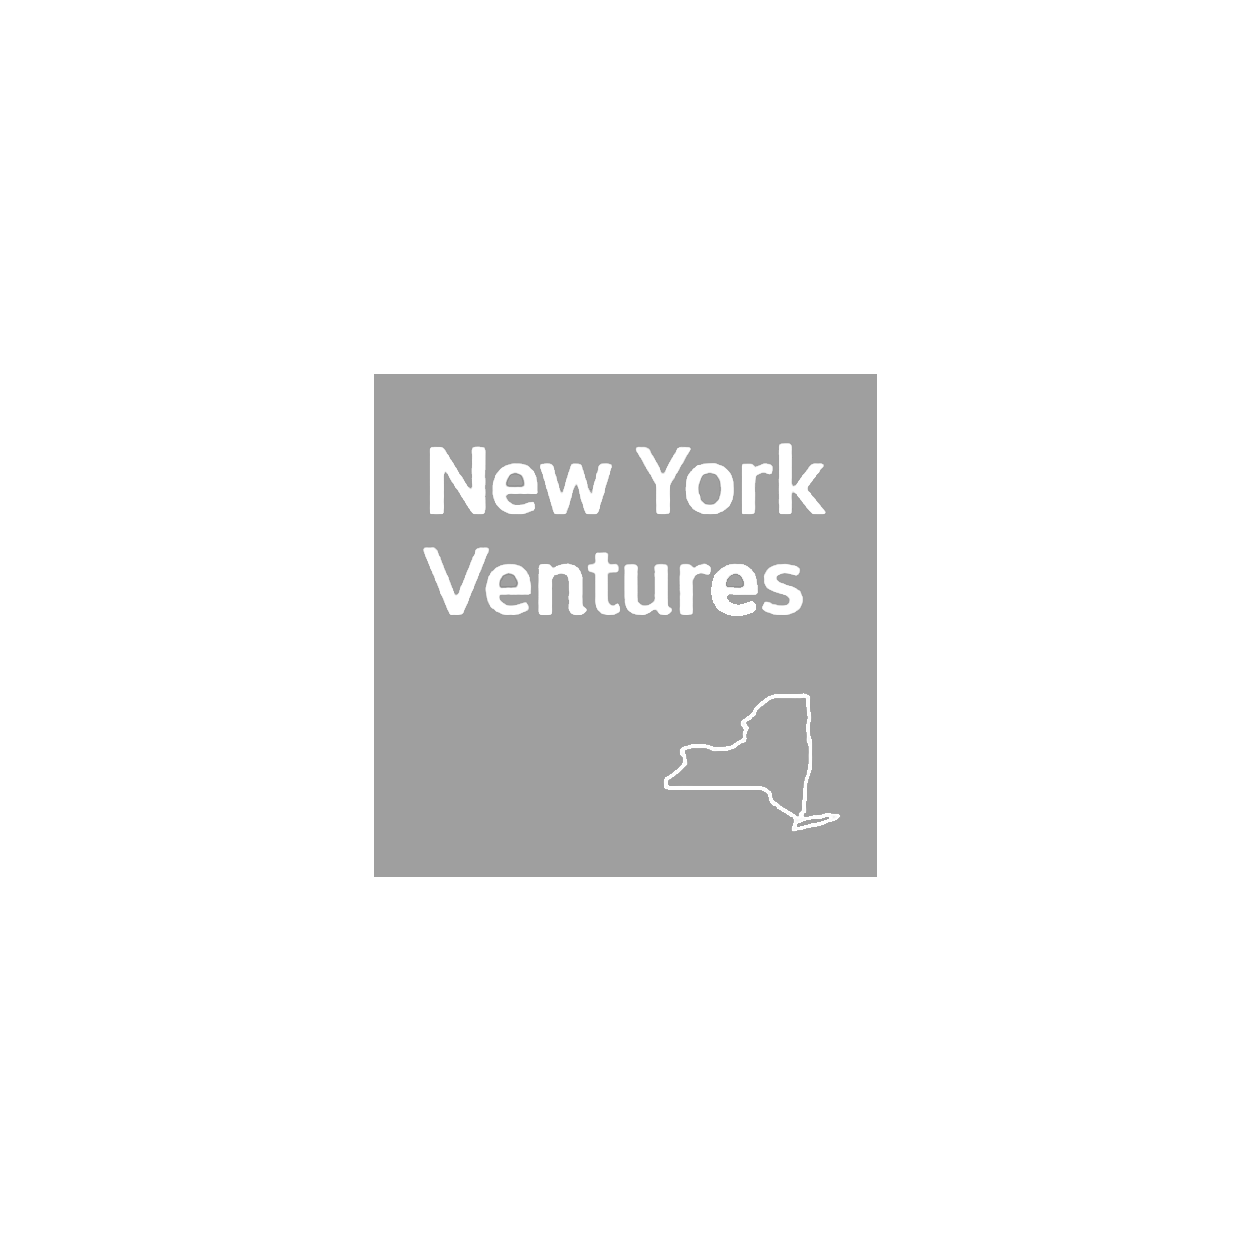 New York Ventures